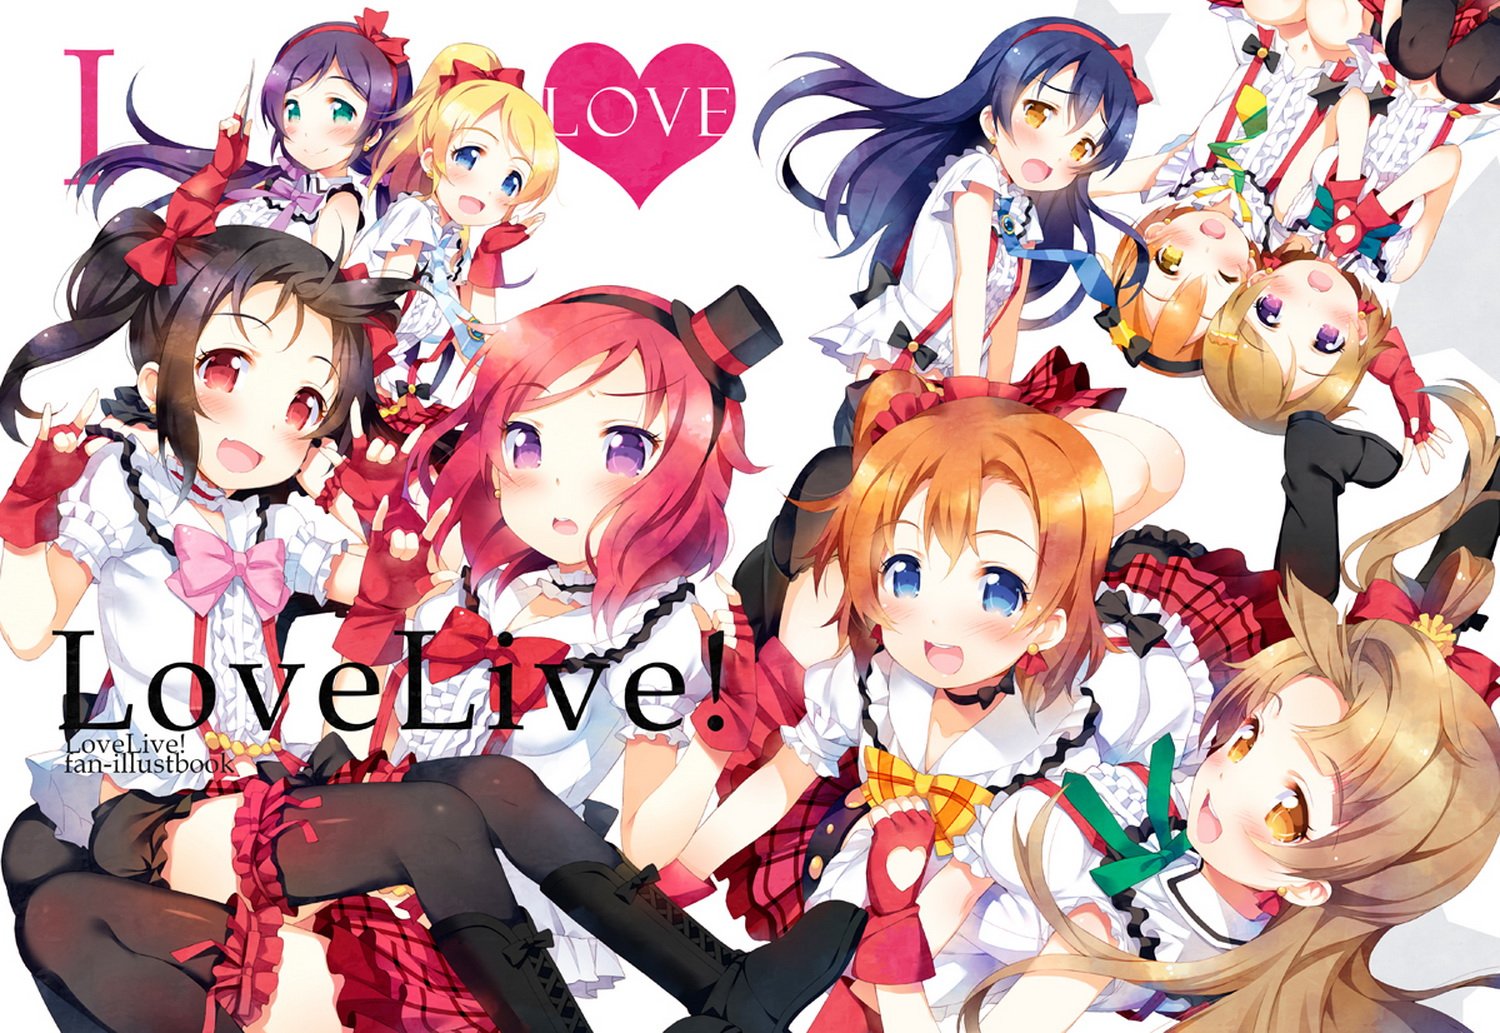 Love Live wallpaper | 1500x1033 | 394500 | WallpaperUP